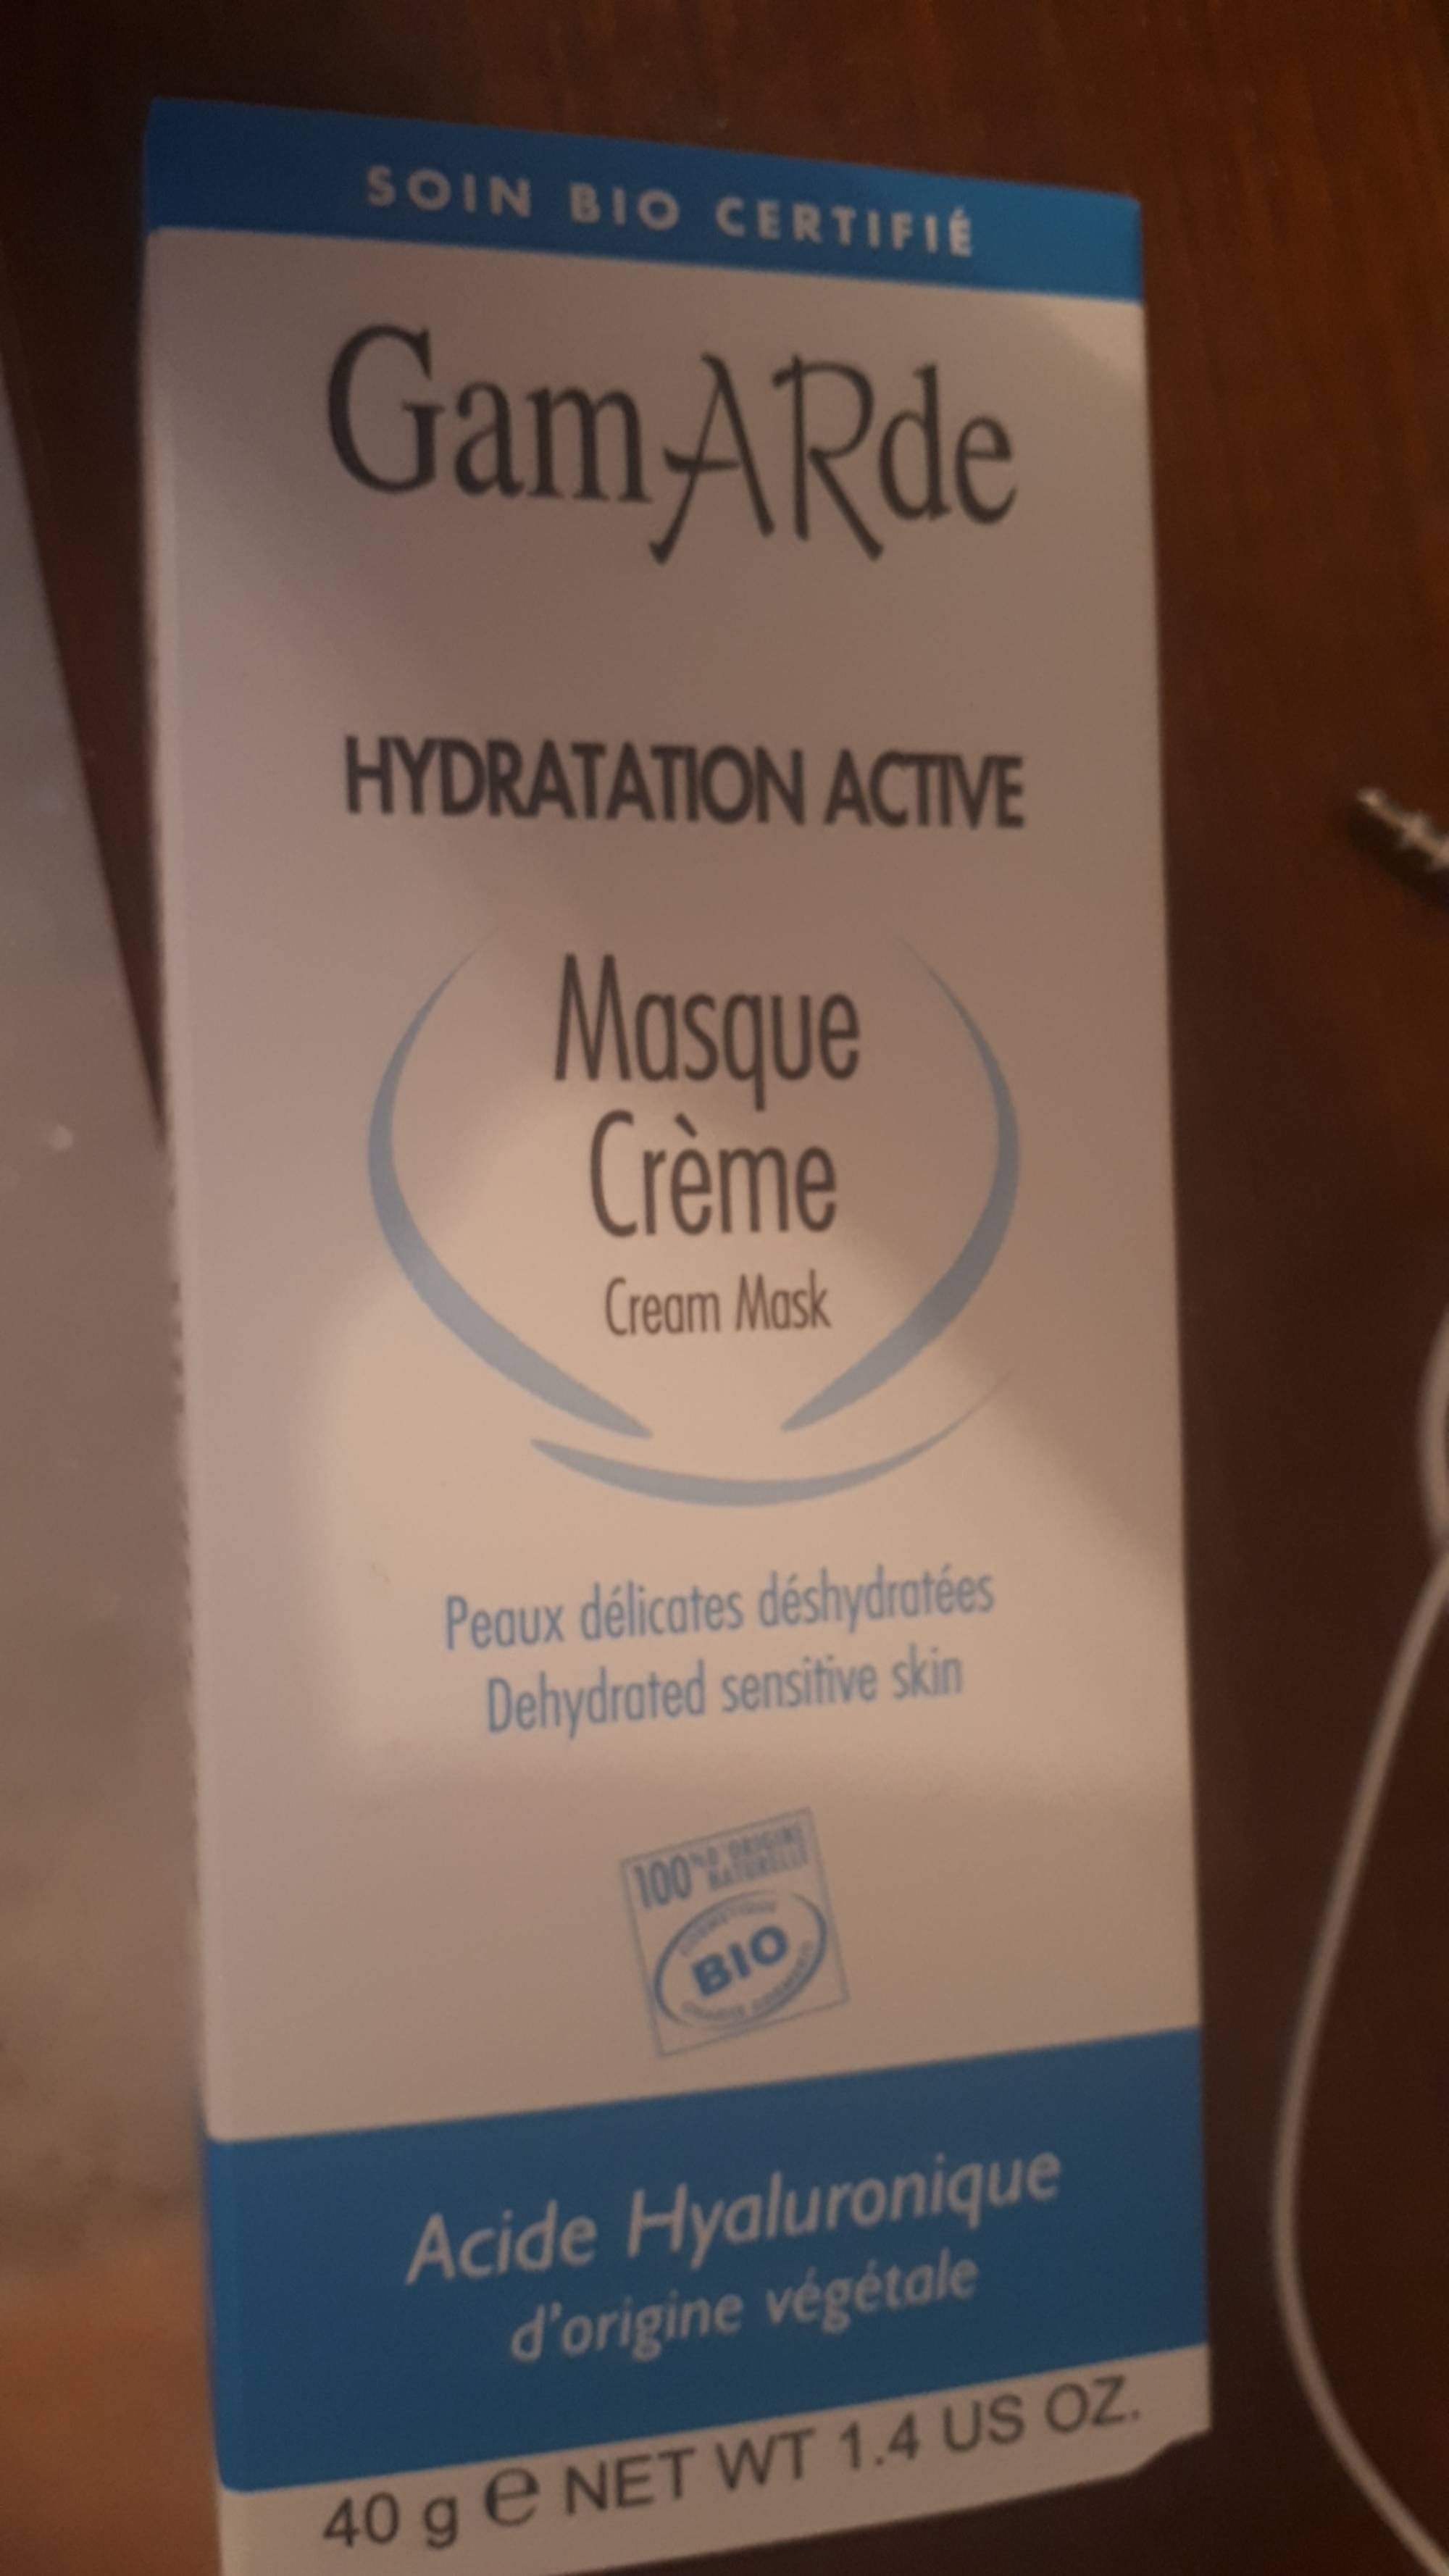 GAMARDE - Masque crème hydratation active bio